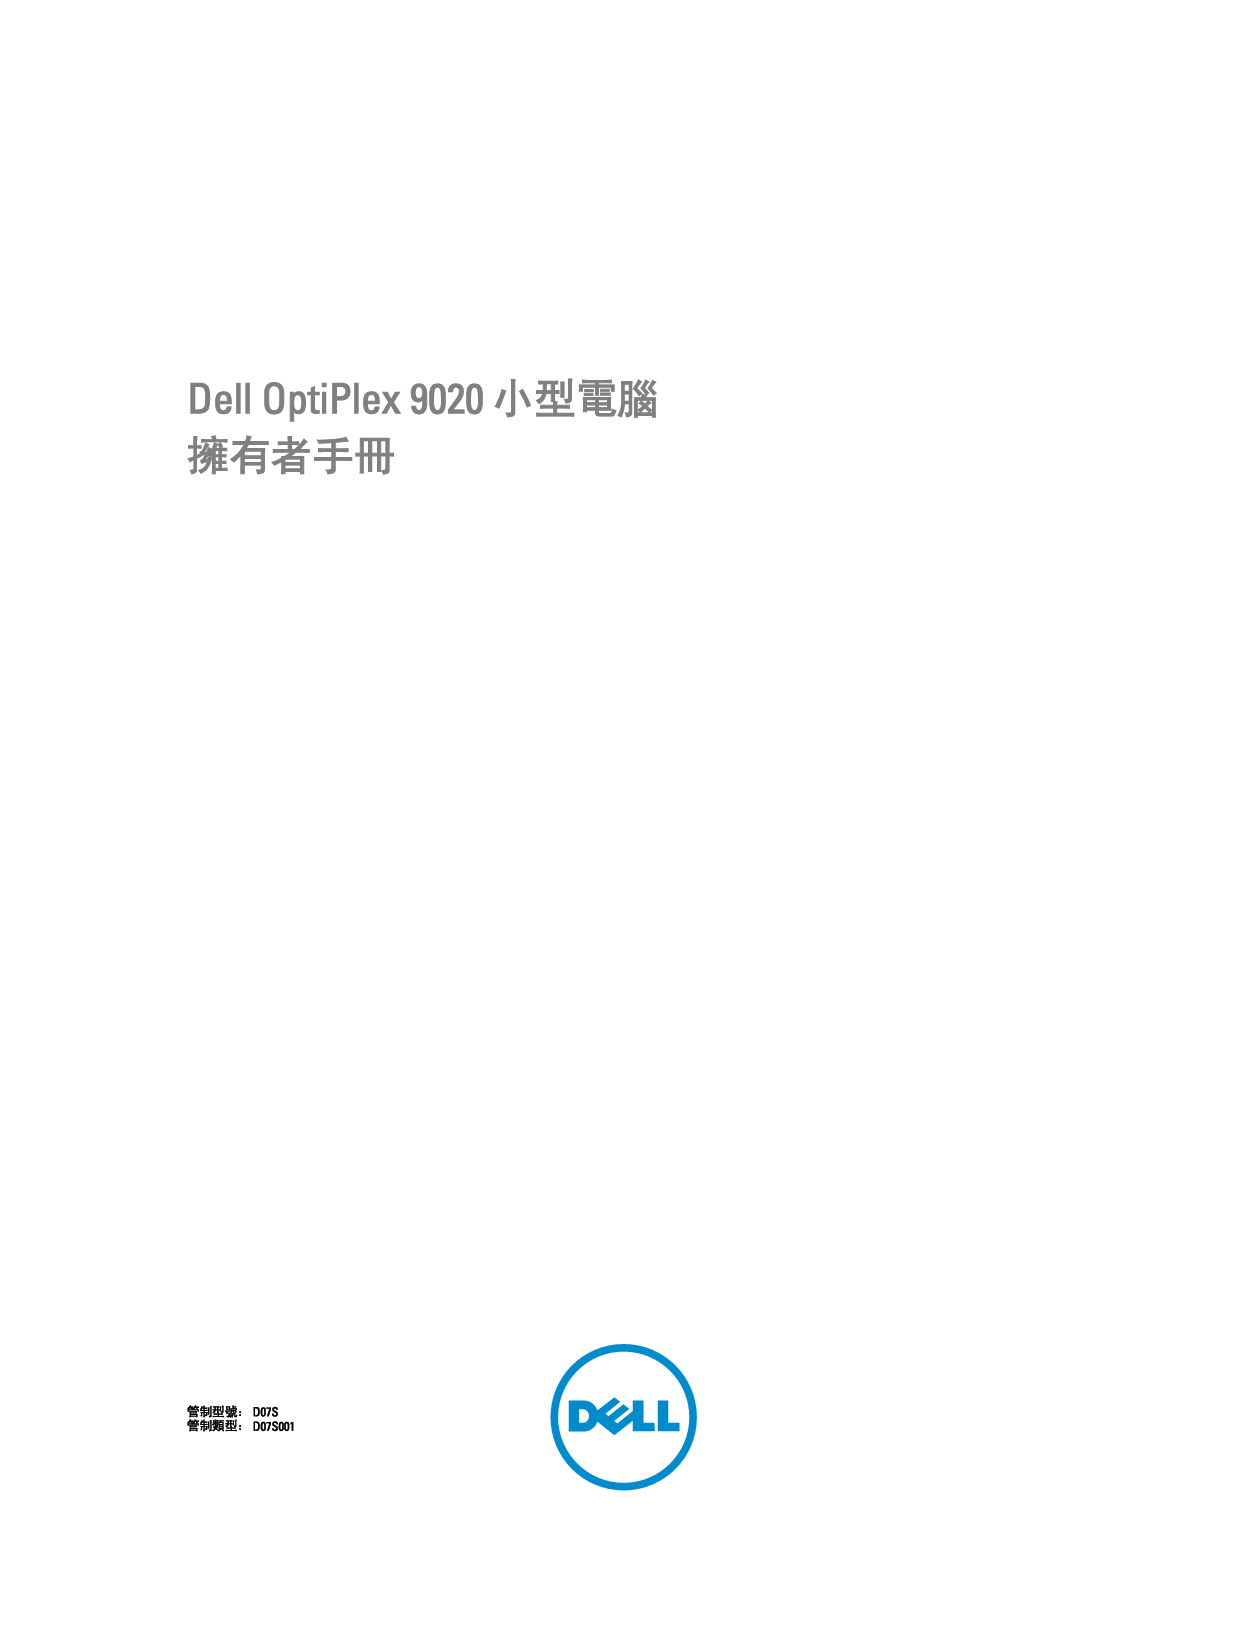 戴尔 Dell Optiplex 9020 小型 繁体 用户手册 封面